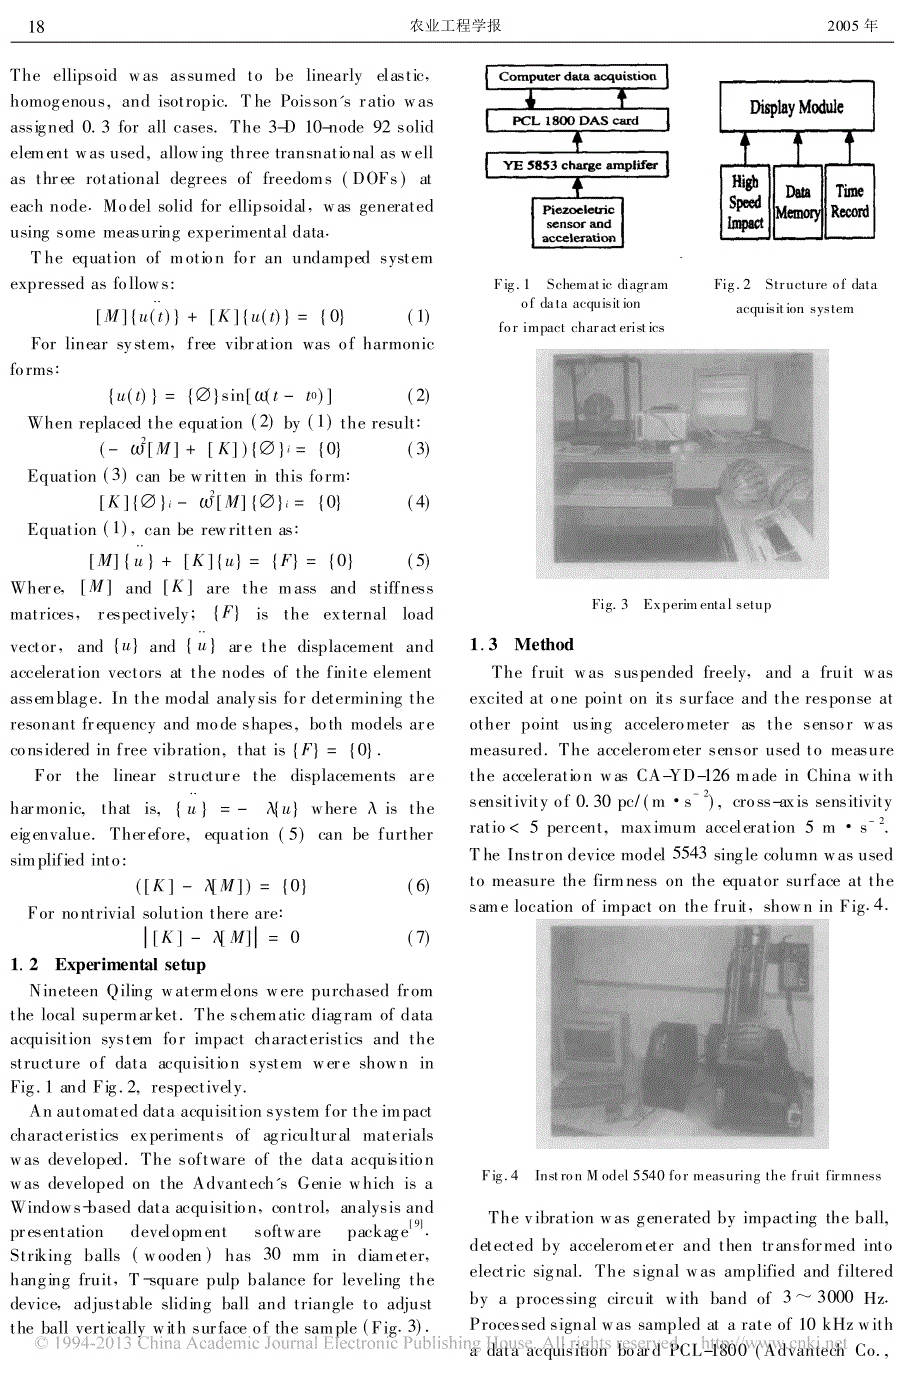 西瓜的有限元模型及其应用_英文_jamalnourain_第2页